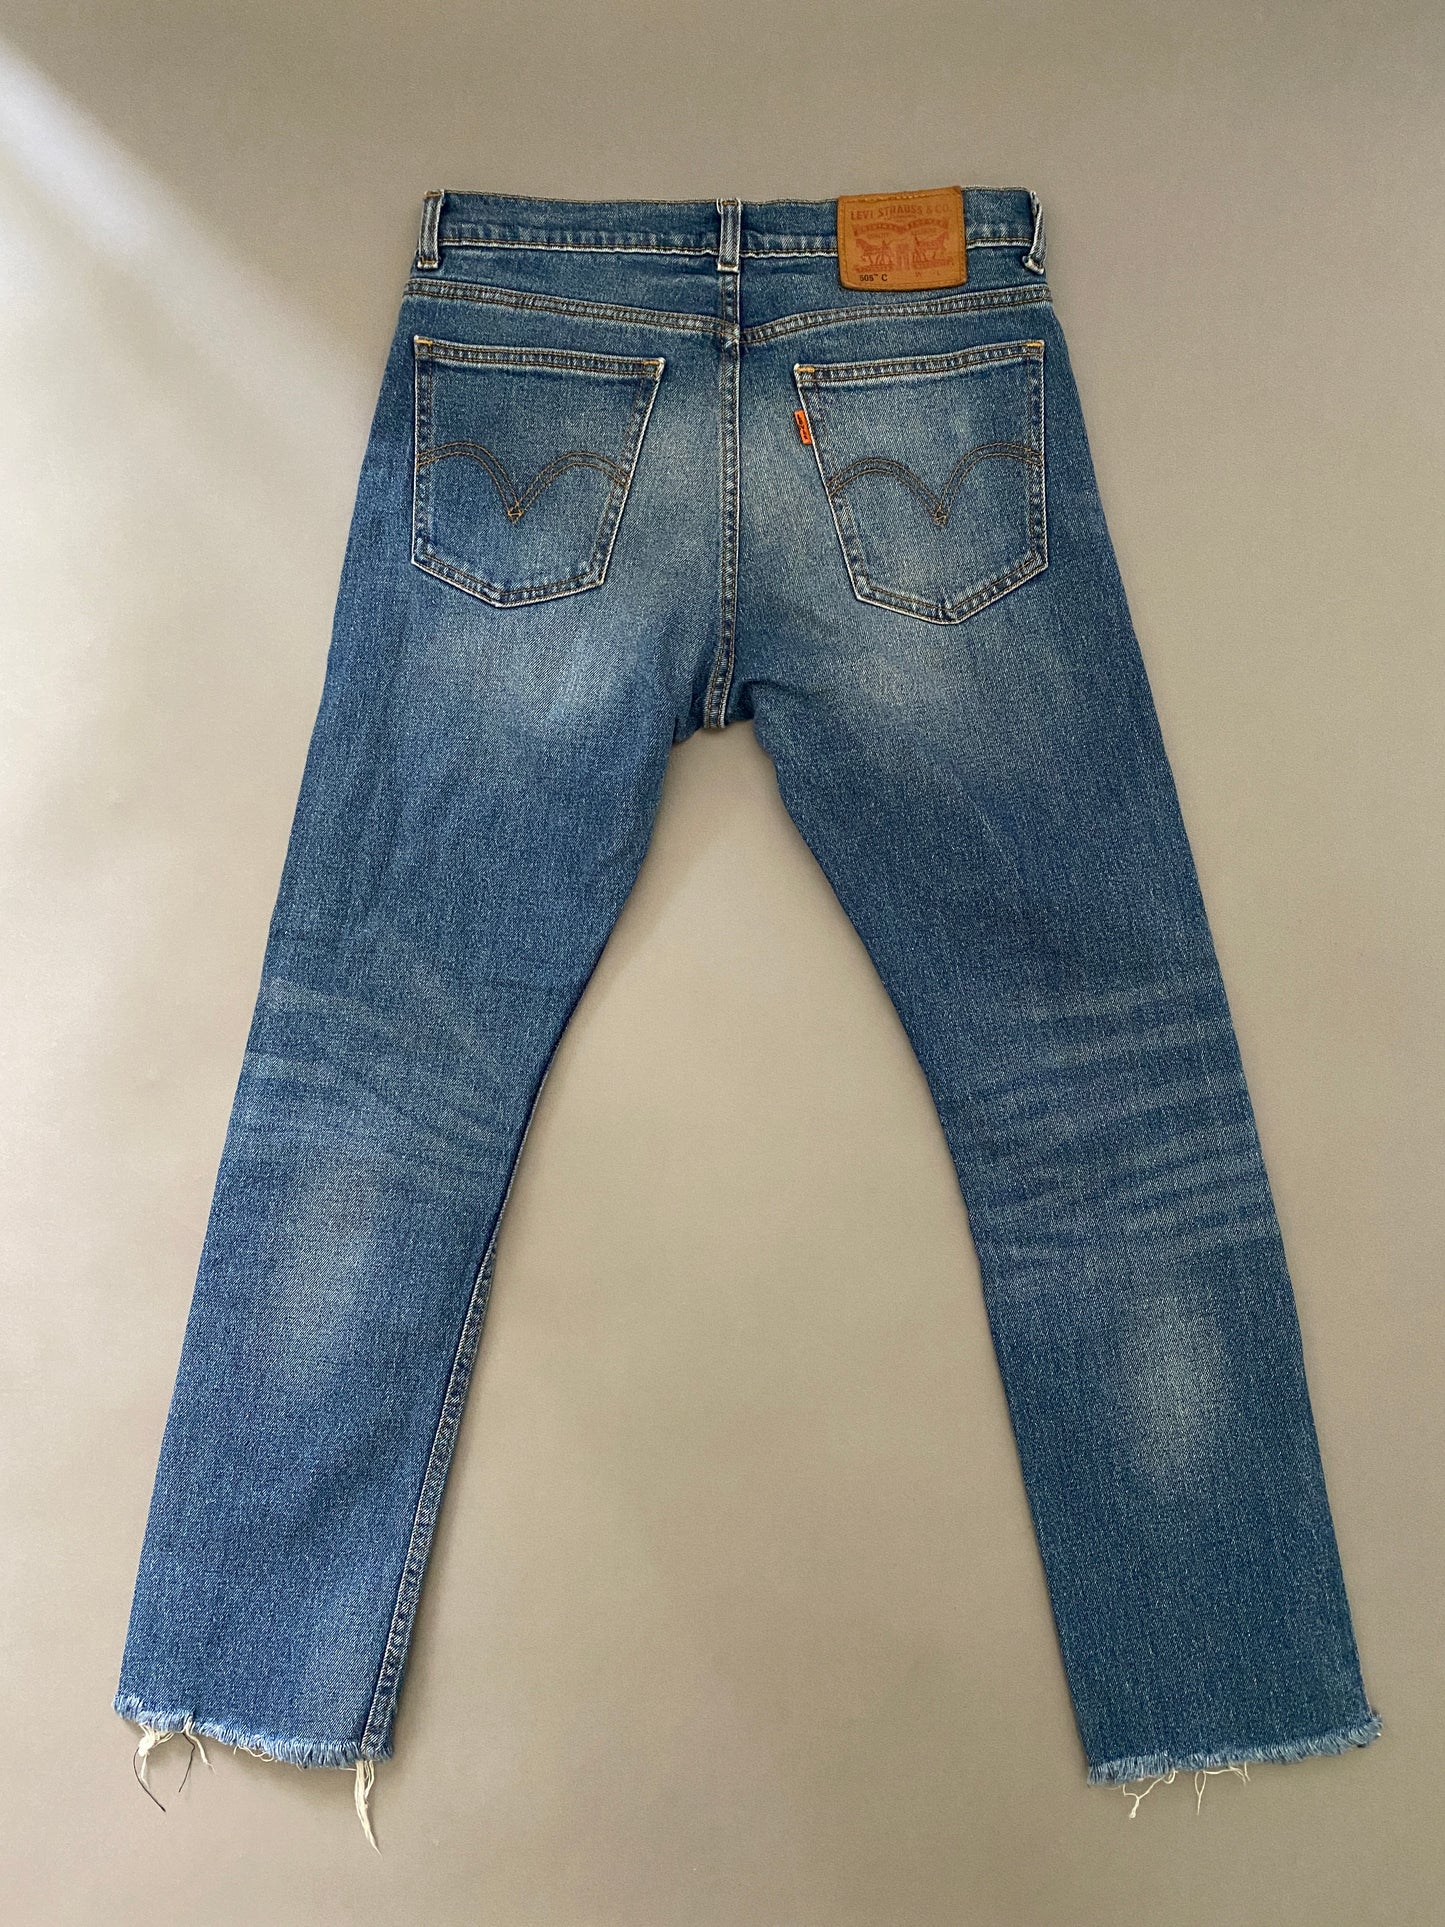 Levis 505 C Jeans